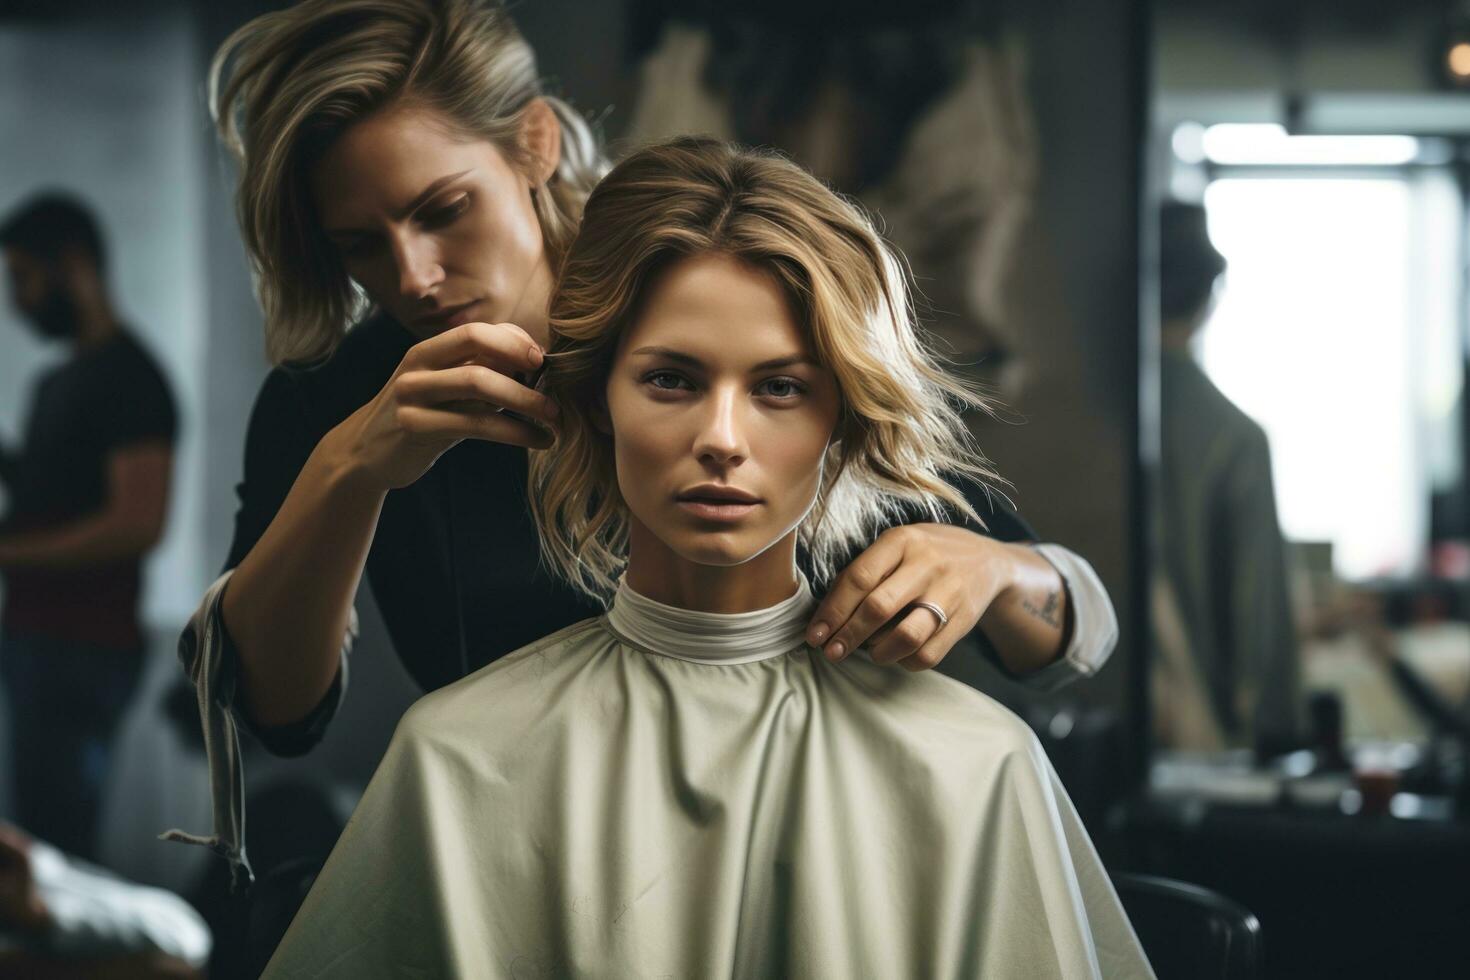 woman getting a haircut in hair salon. photo